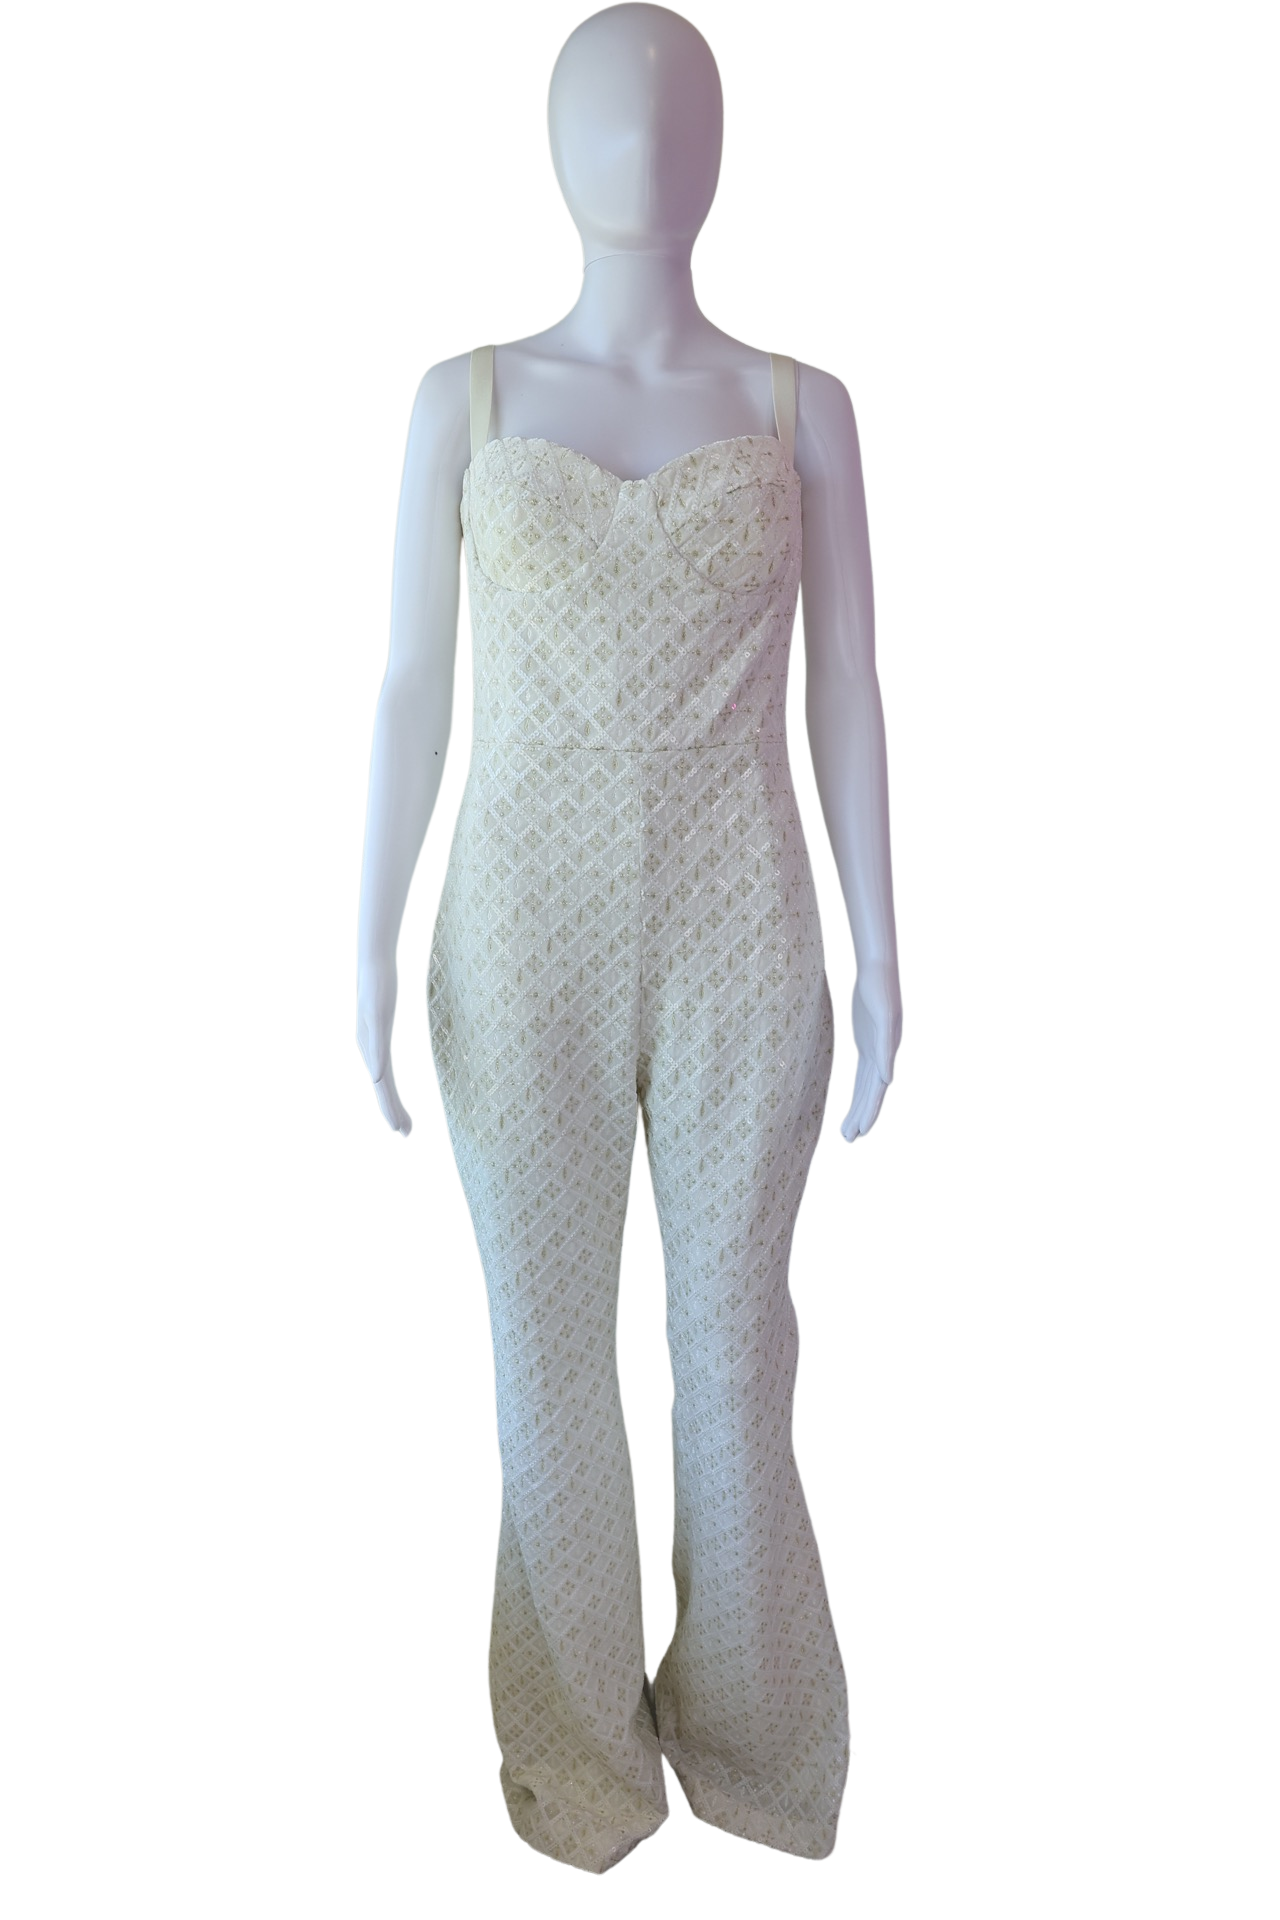 Nadine Merabi Hailey White Jumpsuit size Medium – HOPESCOPE